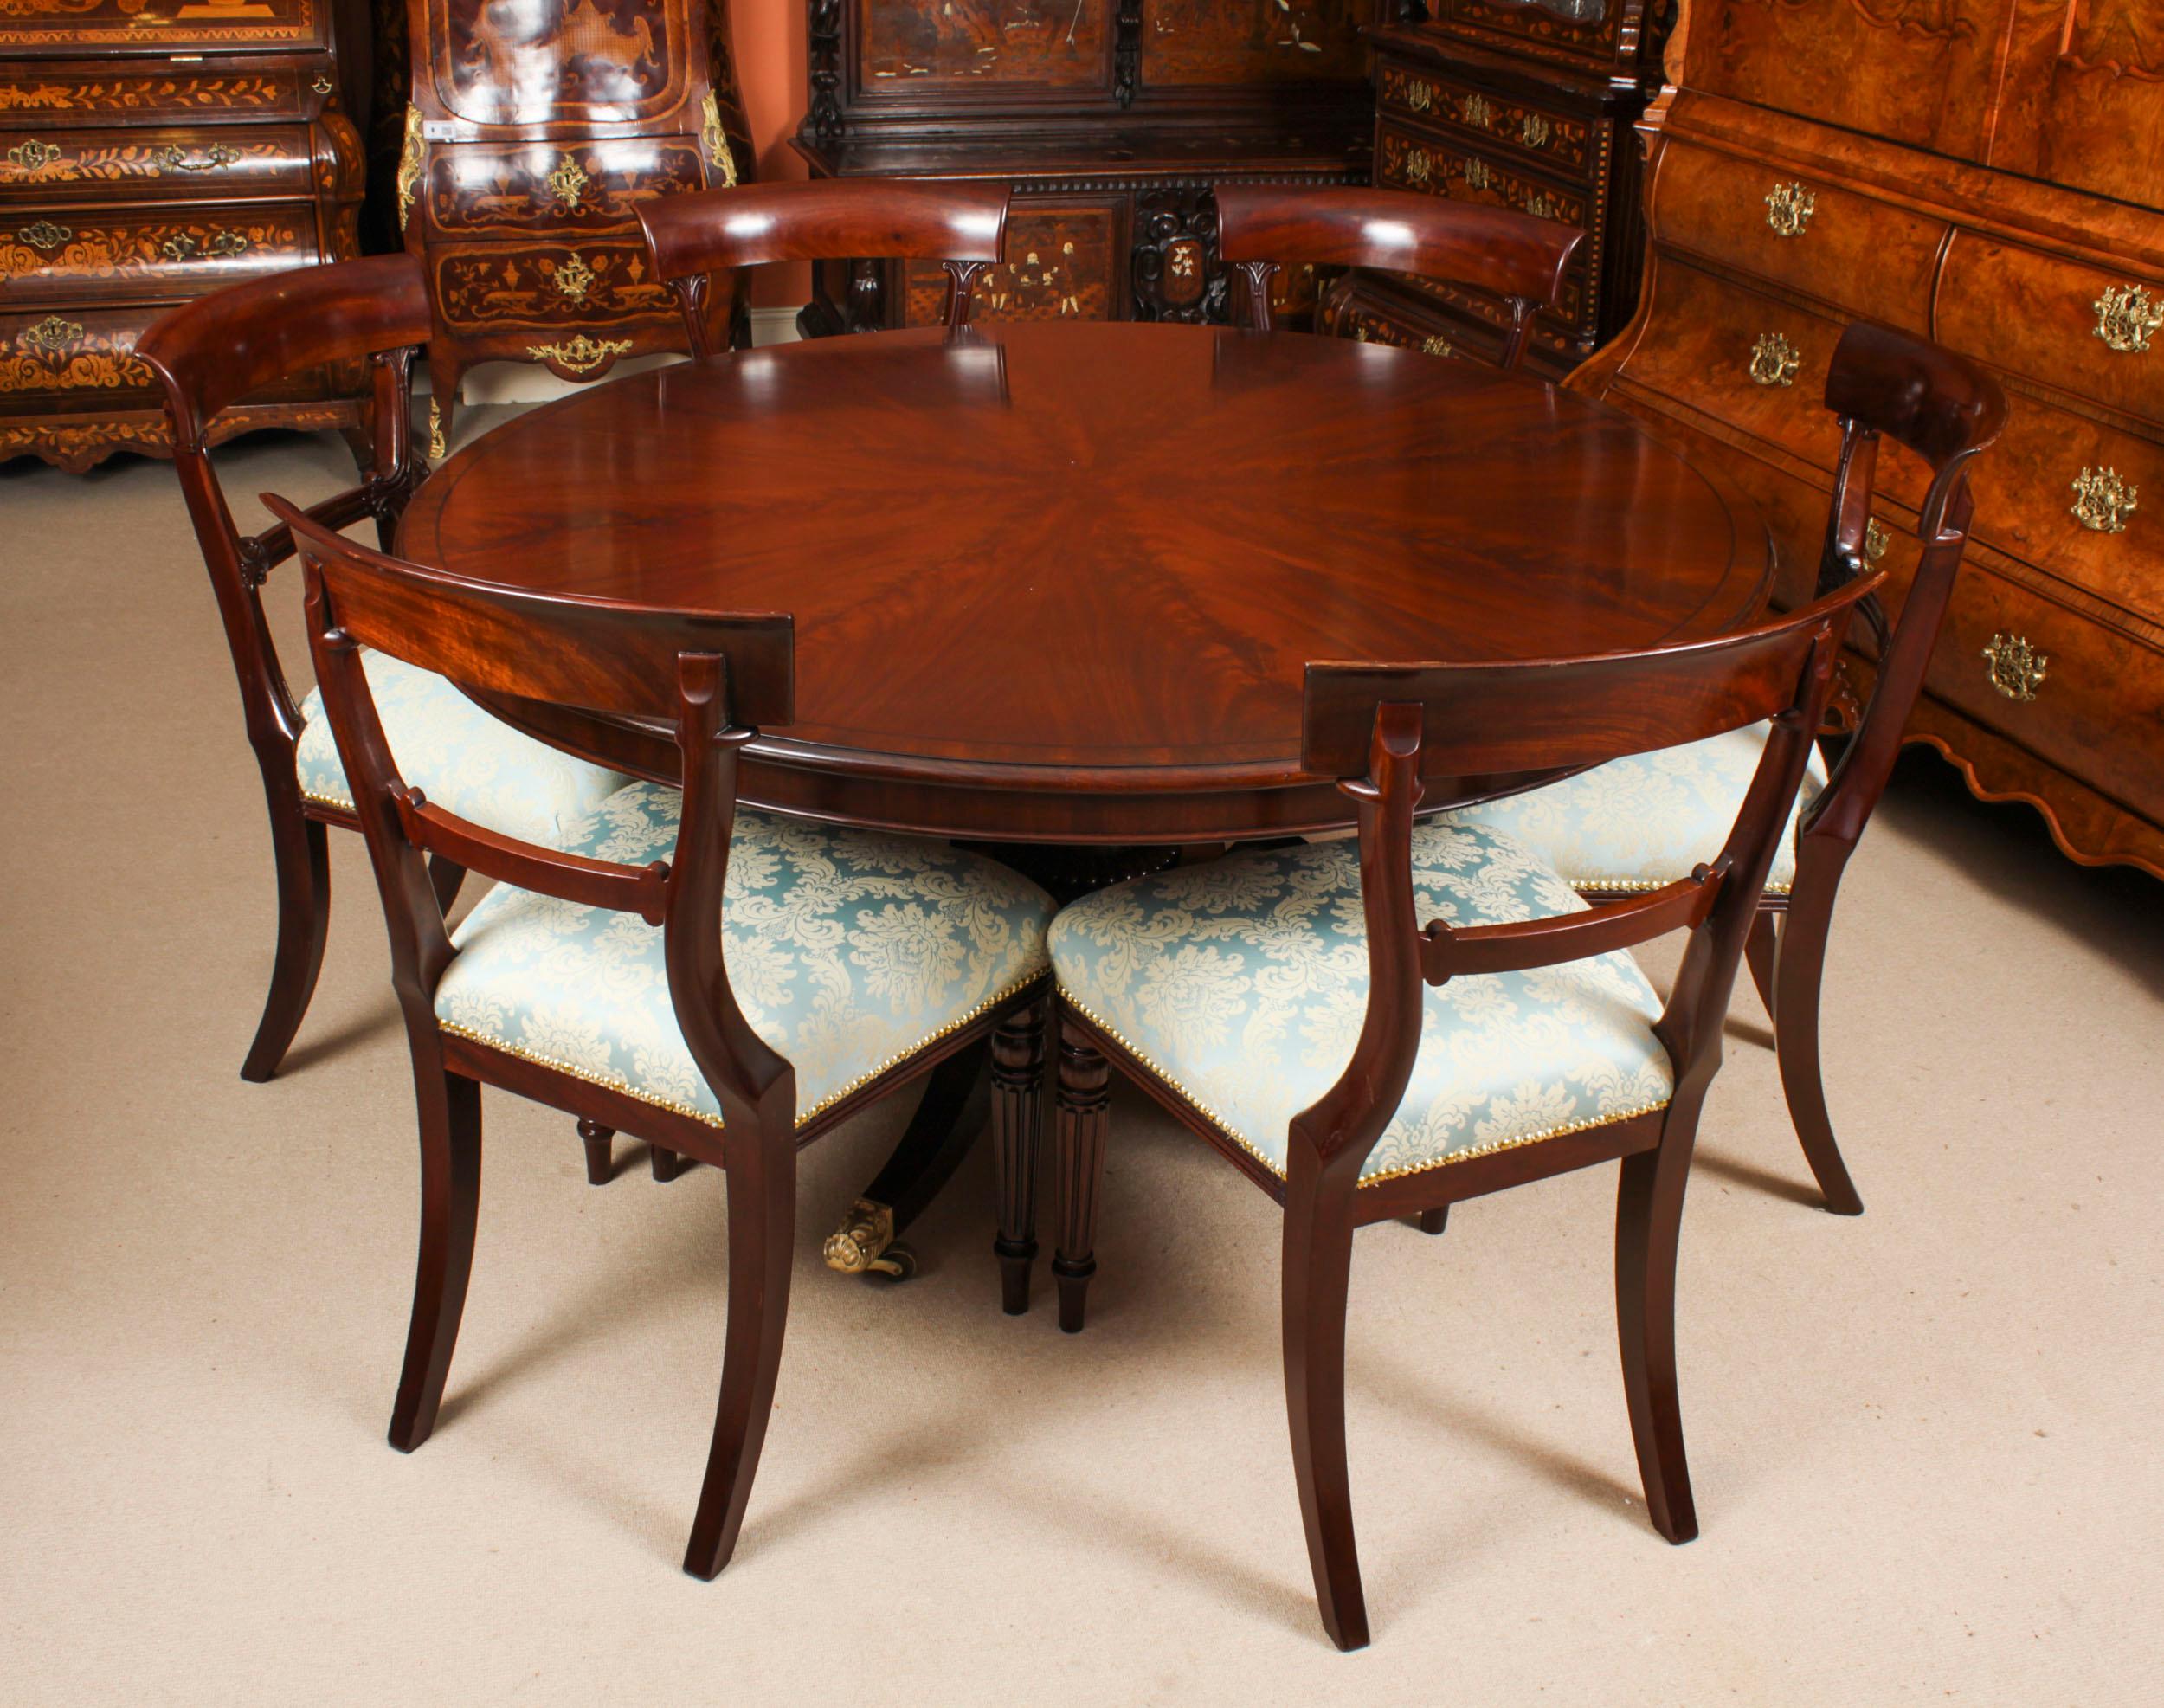 Une superbe table de petit déjeuner / table de salle à manger William IV à la manière de Gillows et l'ensemble assorti de six chaises de salle à manger William IV, le tout datant d'environ 1830.

Le beau plateau circulaire en acajou flammé figuré